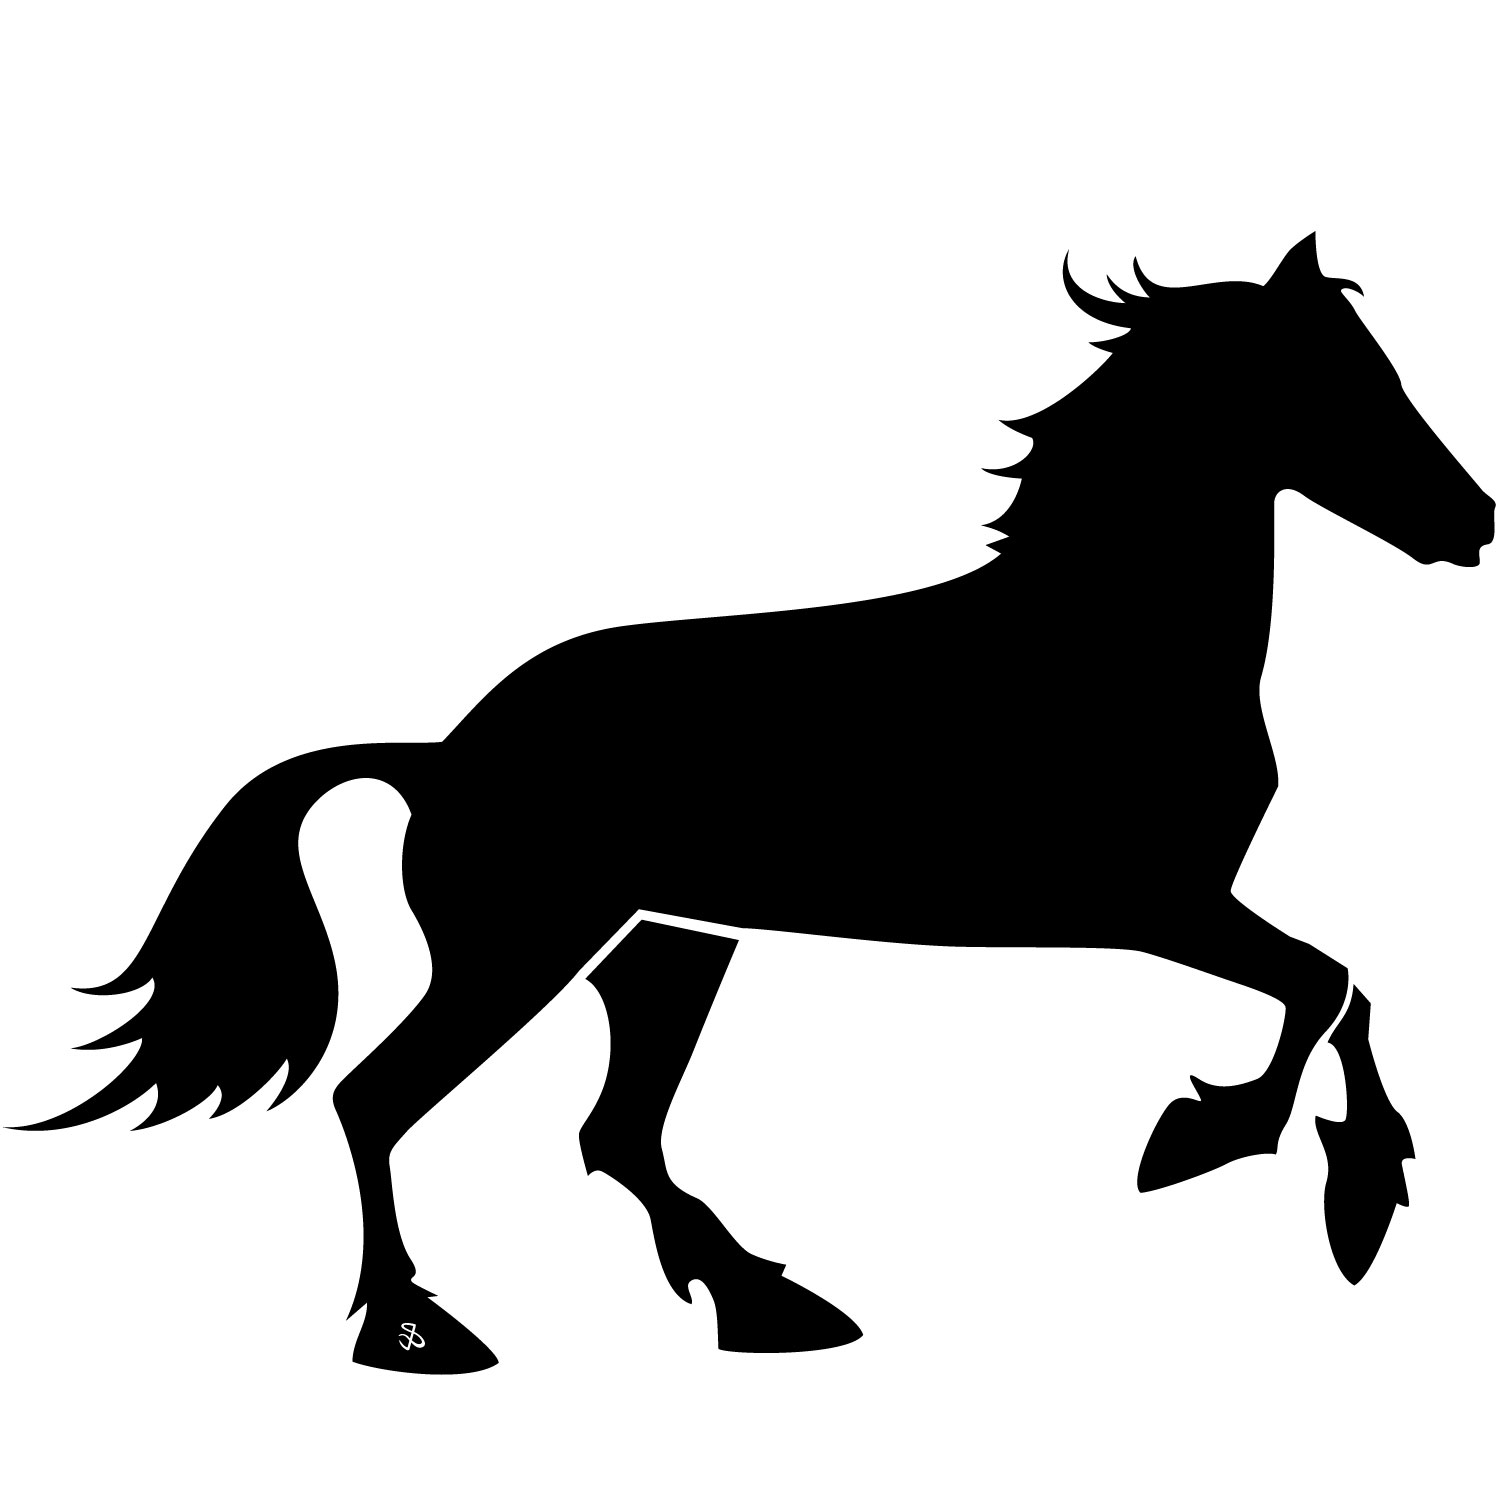 Horses Free Vectors | Free vector images, graphics and art - CC ...